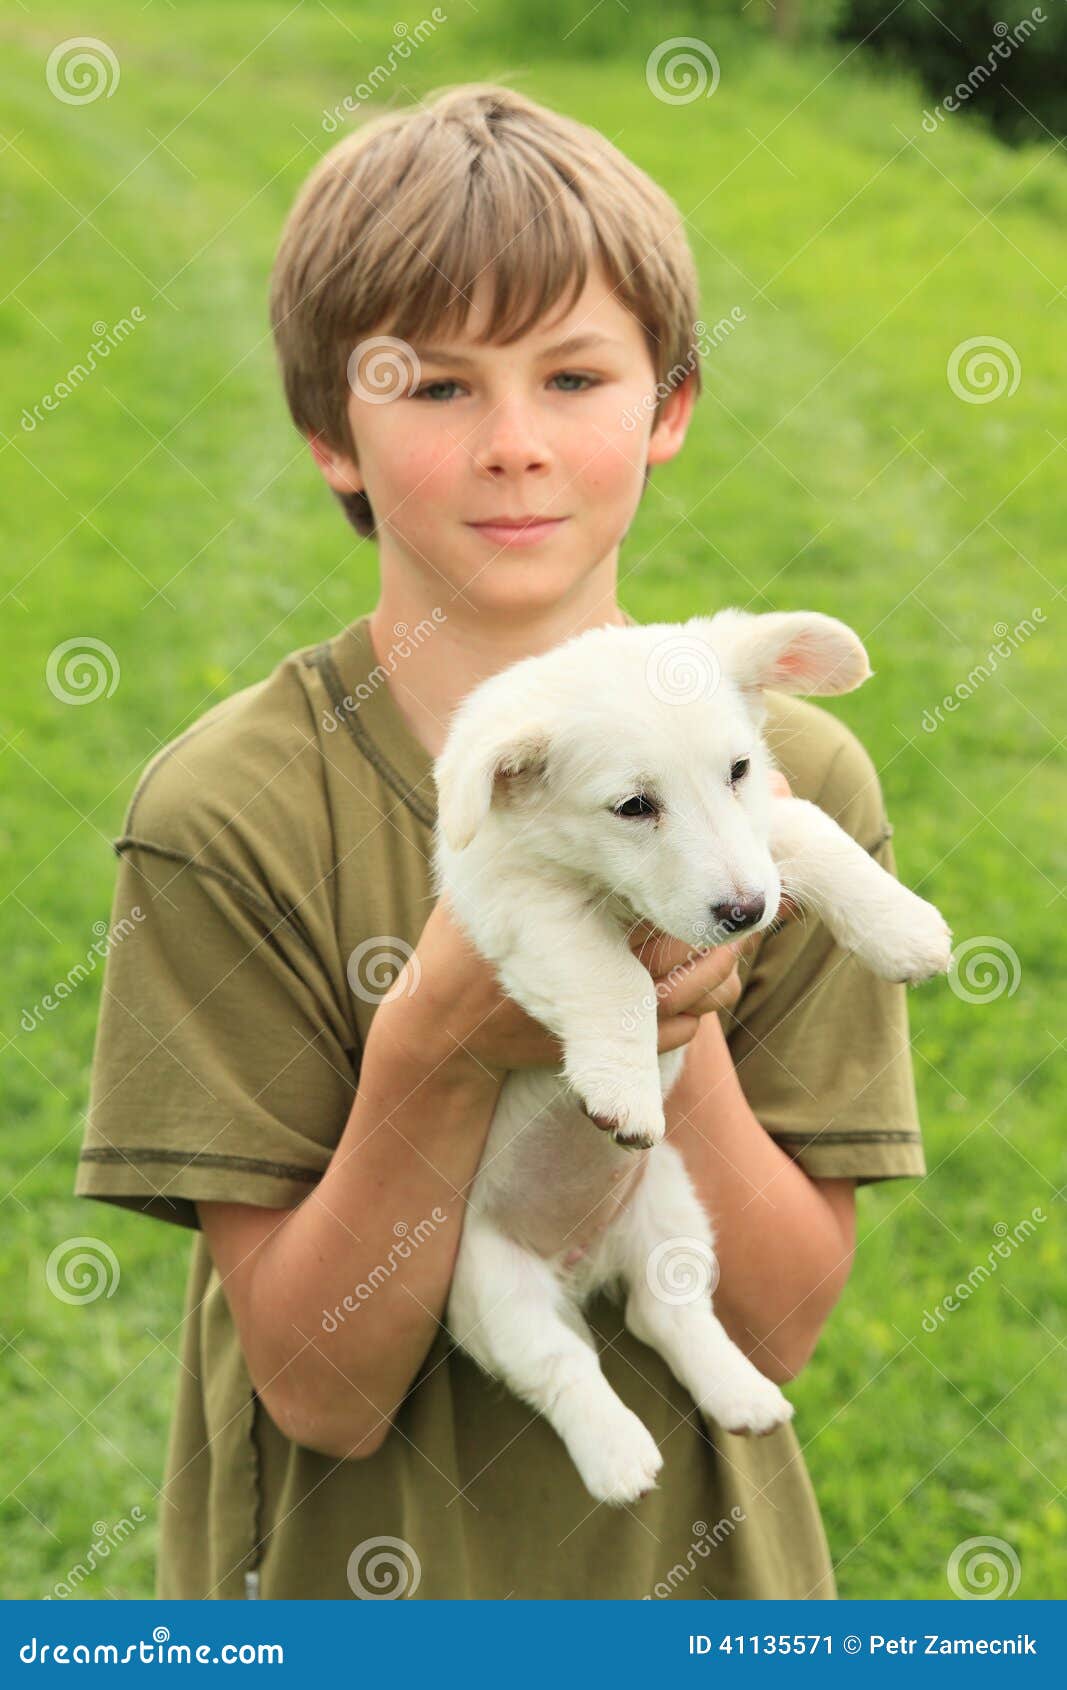 Мальчик держит собаку. Щенок на руках. Человек с щенком на руках. Мальчик с щенком в руках. Человек держит собаку.